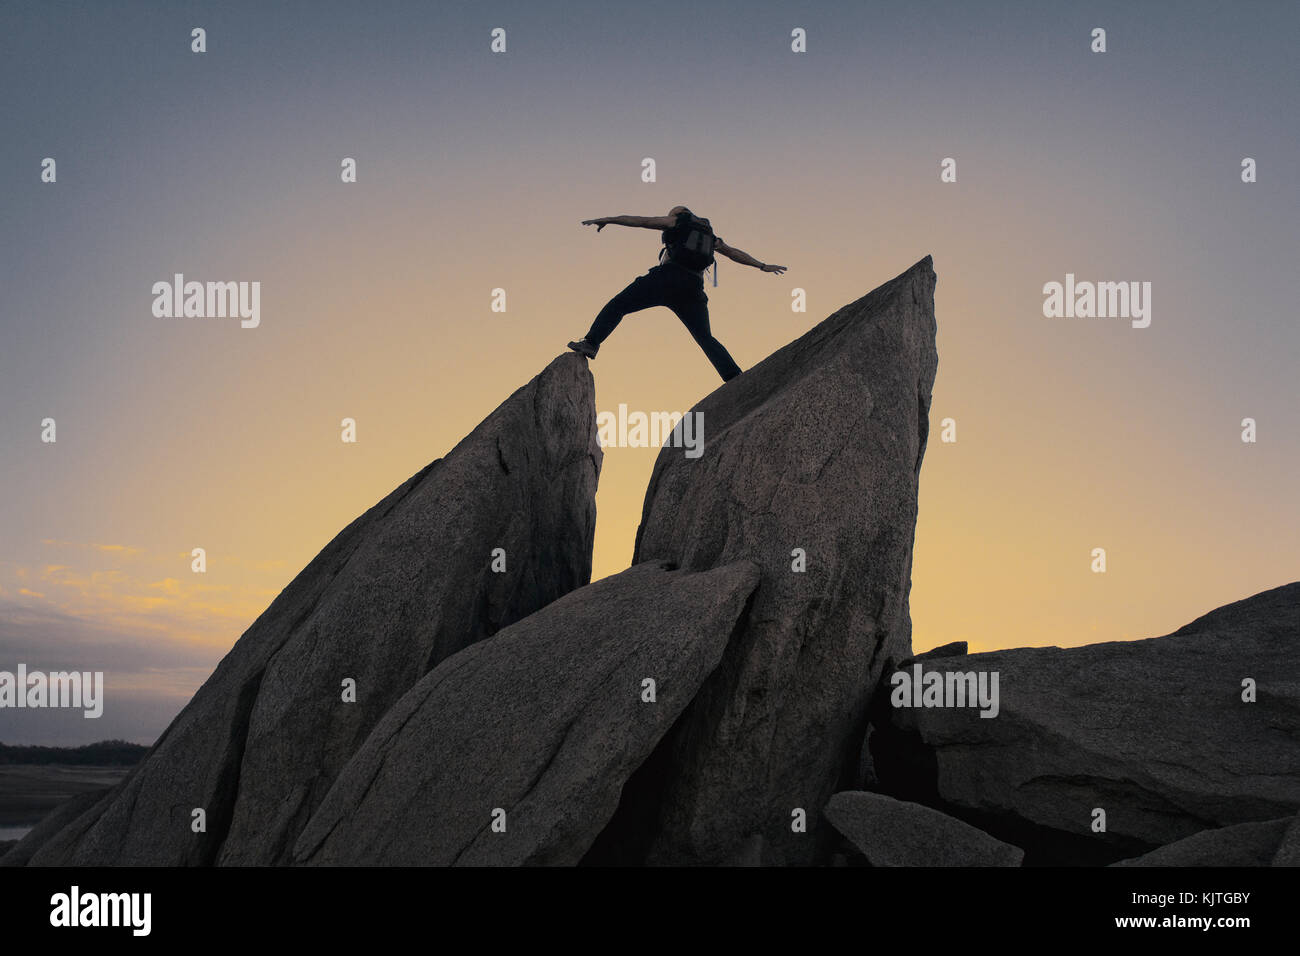 Rock Climbing at Sunset Stock Photo